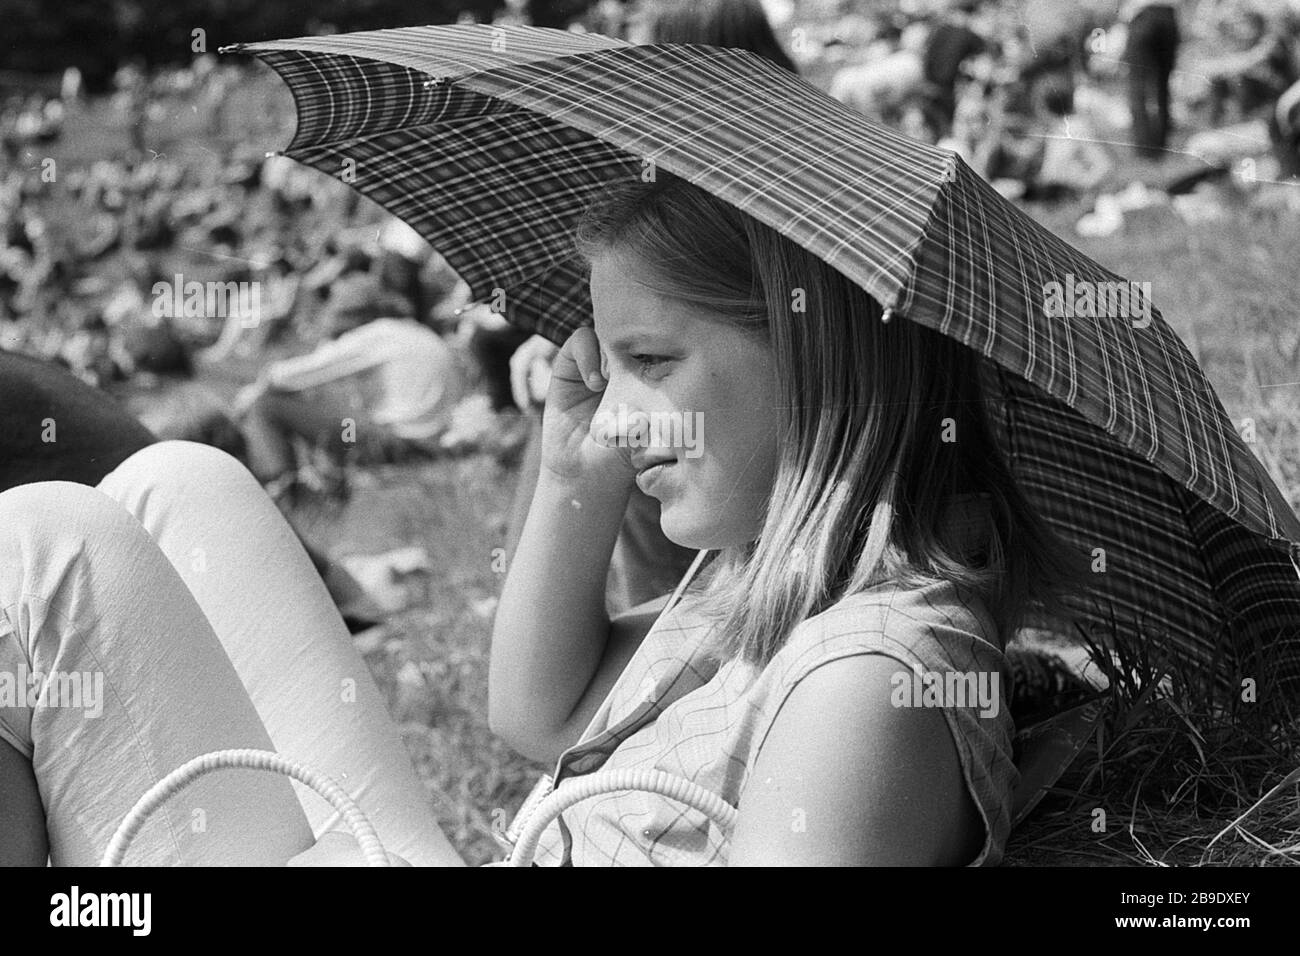 Eine junge Frau schützt sich mit einem Regenschirm vor der Sonne. Aufnahme  von einem Festival in der Thingstätte in Heidelberg, 1970. [Automatisierte  Übersetzung] Stockfotografie - Alamy